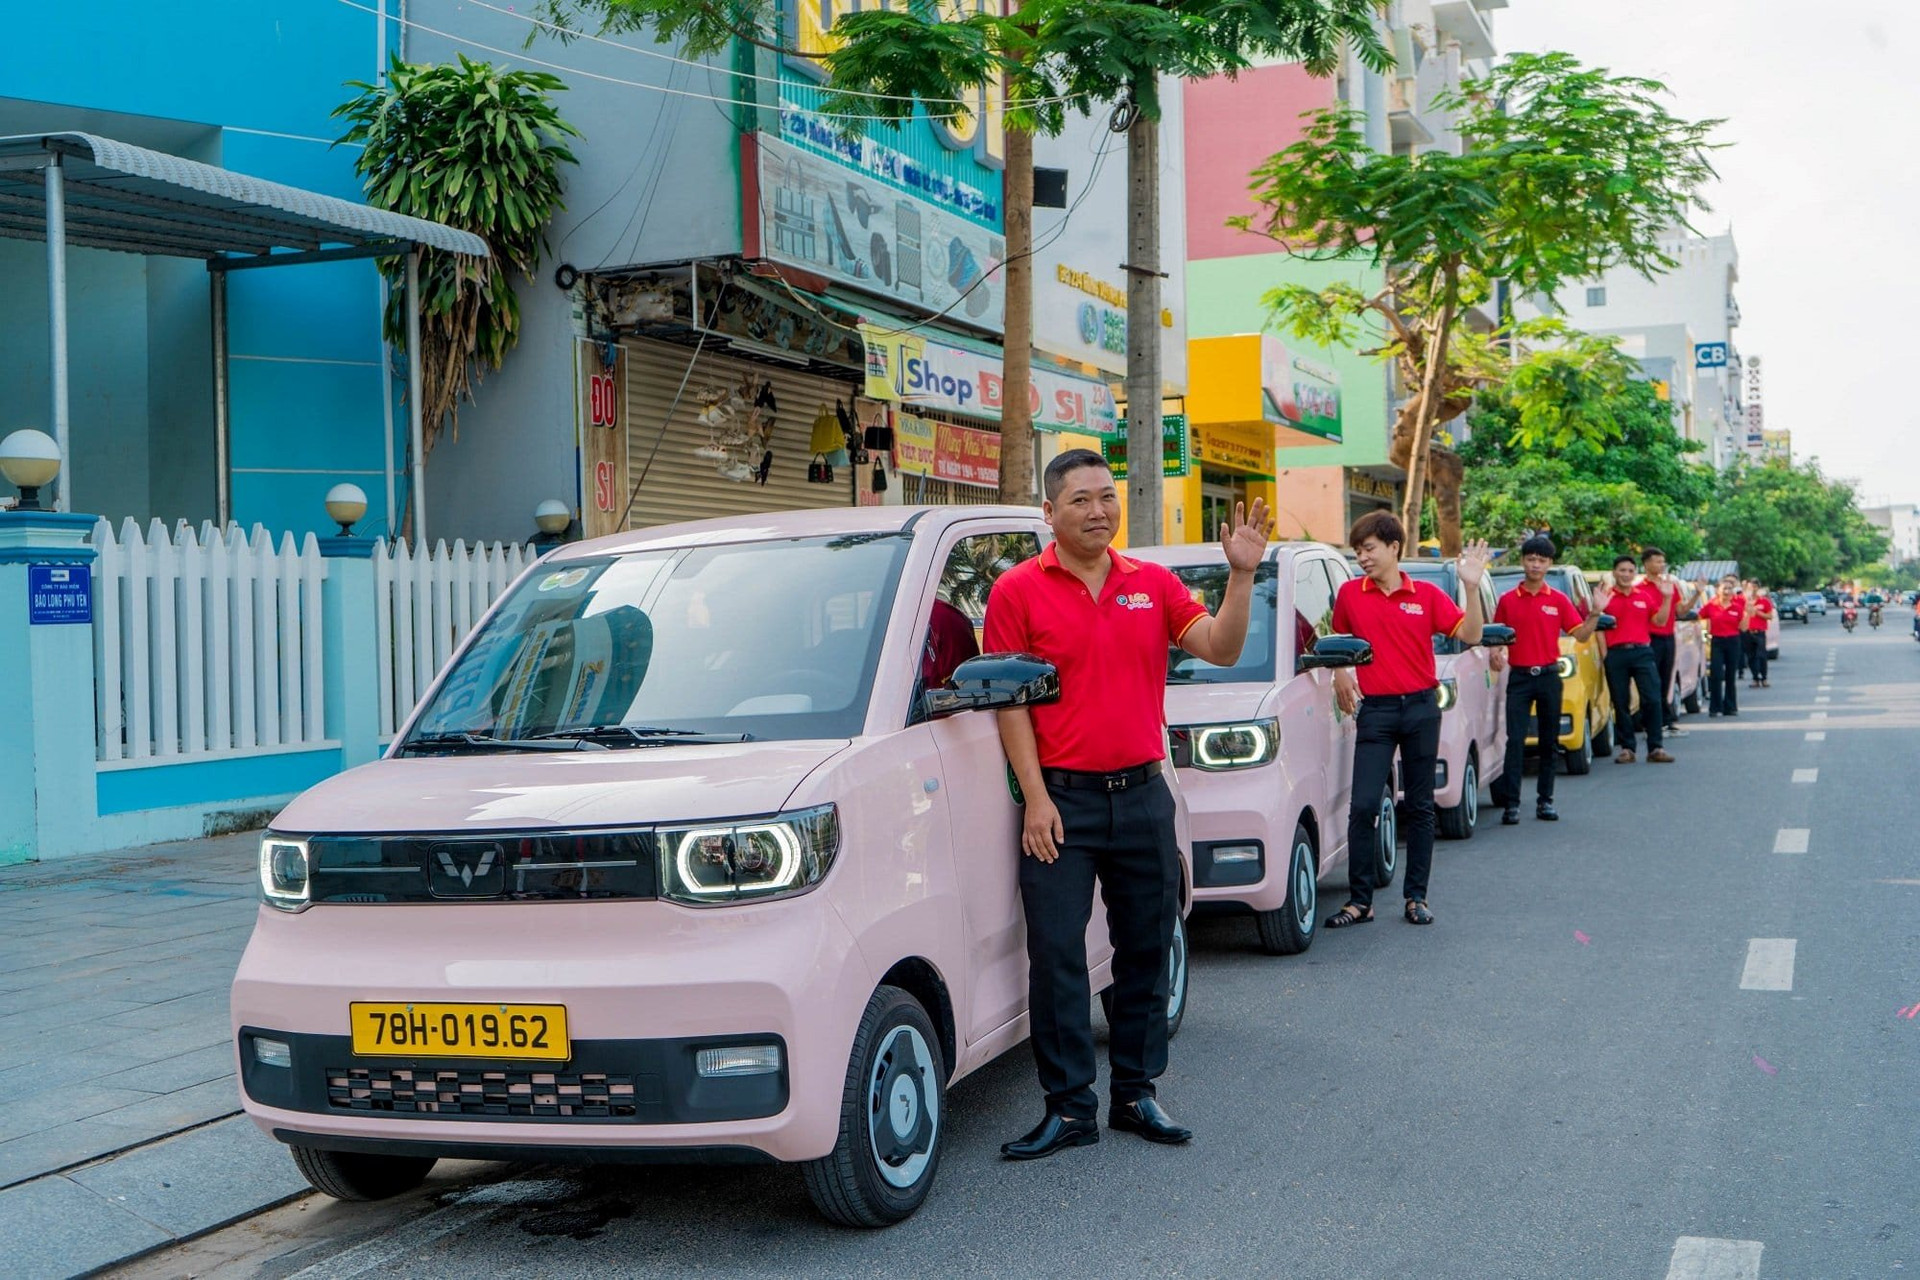 Taxi điện mini đầu tiên tại Việt Nam: Giá cước chỉ bằng 1 nửa Xanh SM của tỷ phú Phạm Nhật Vượng nhưng cộng đồng mạng vẫn lo ngại vì 2 yếu tố này - Ảnh 1.